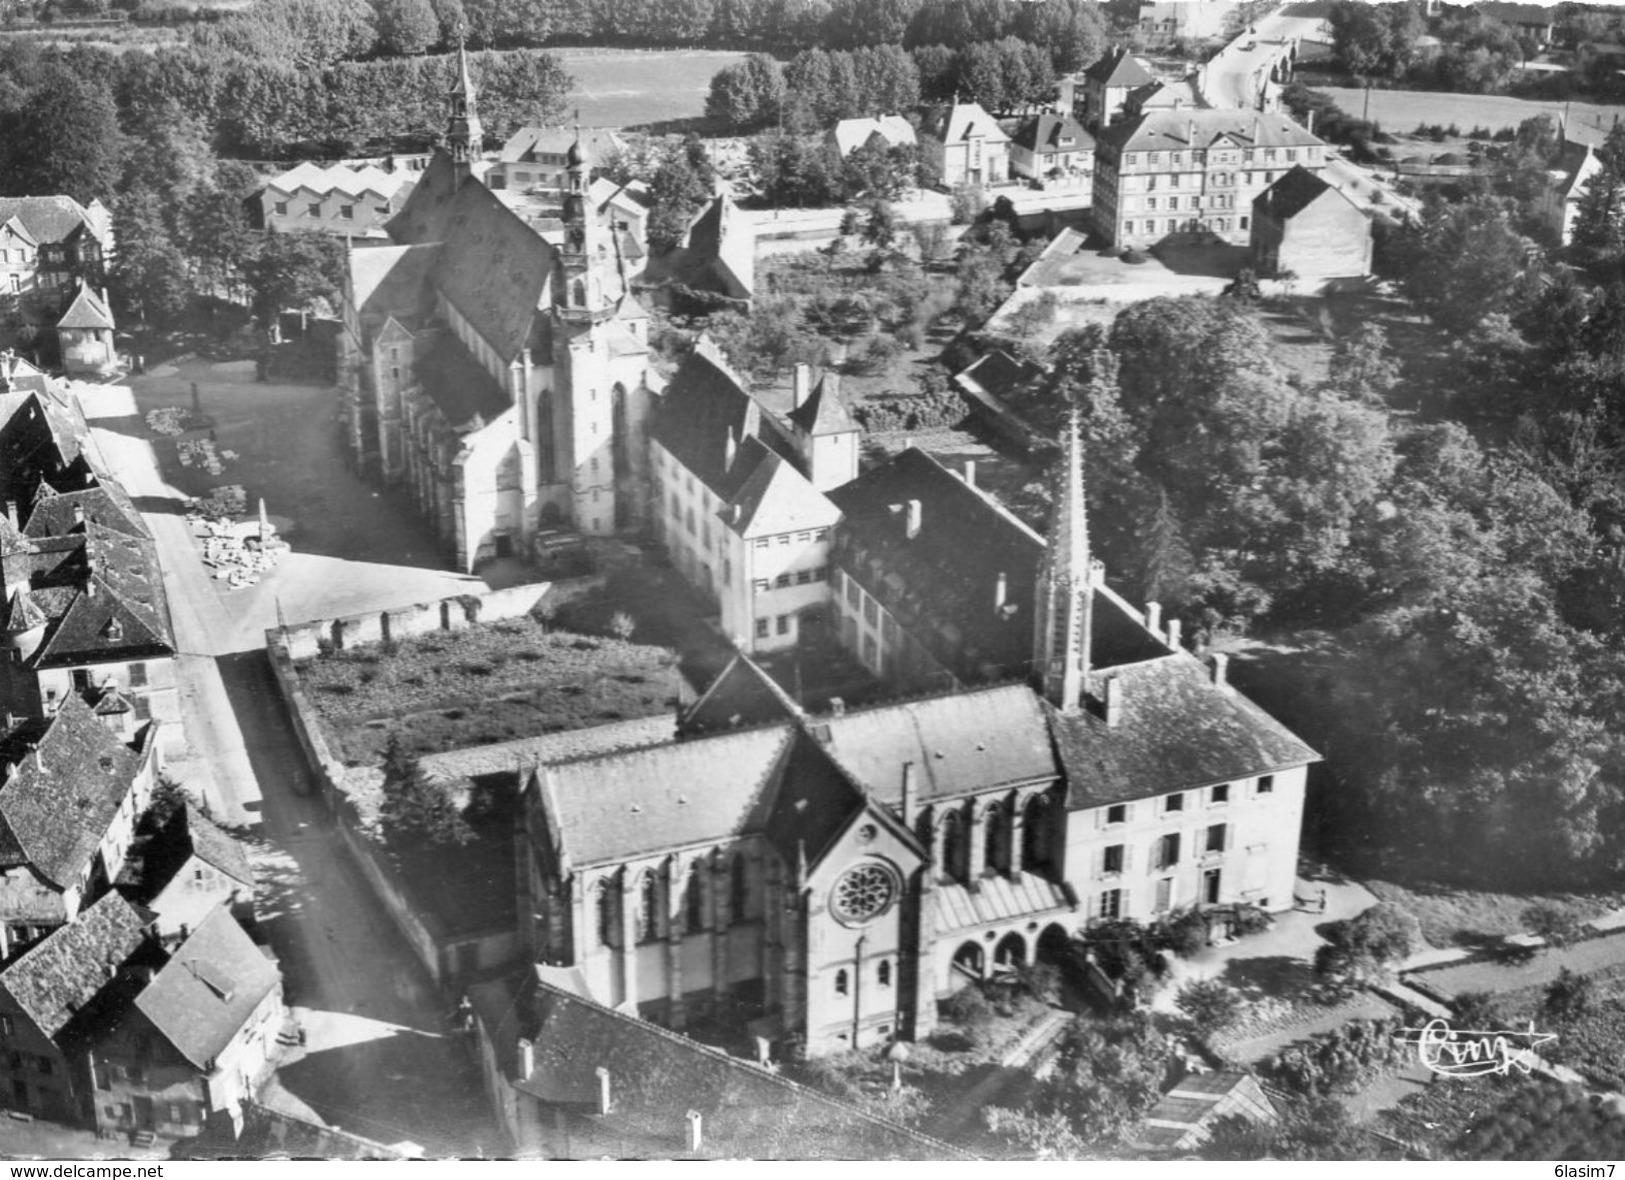 CPSM Dentellée - MOLSHEIM (67) - Vue Aérienne Du Quartier Du Couvent Notre-Dame Dans Les Années 50 - Molsheim